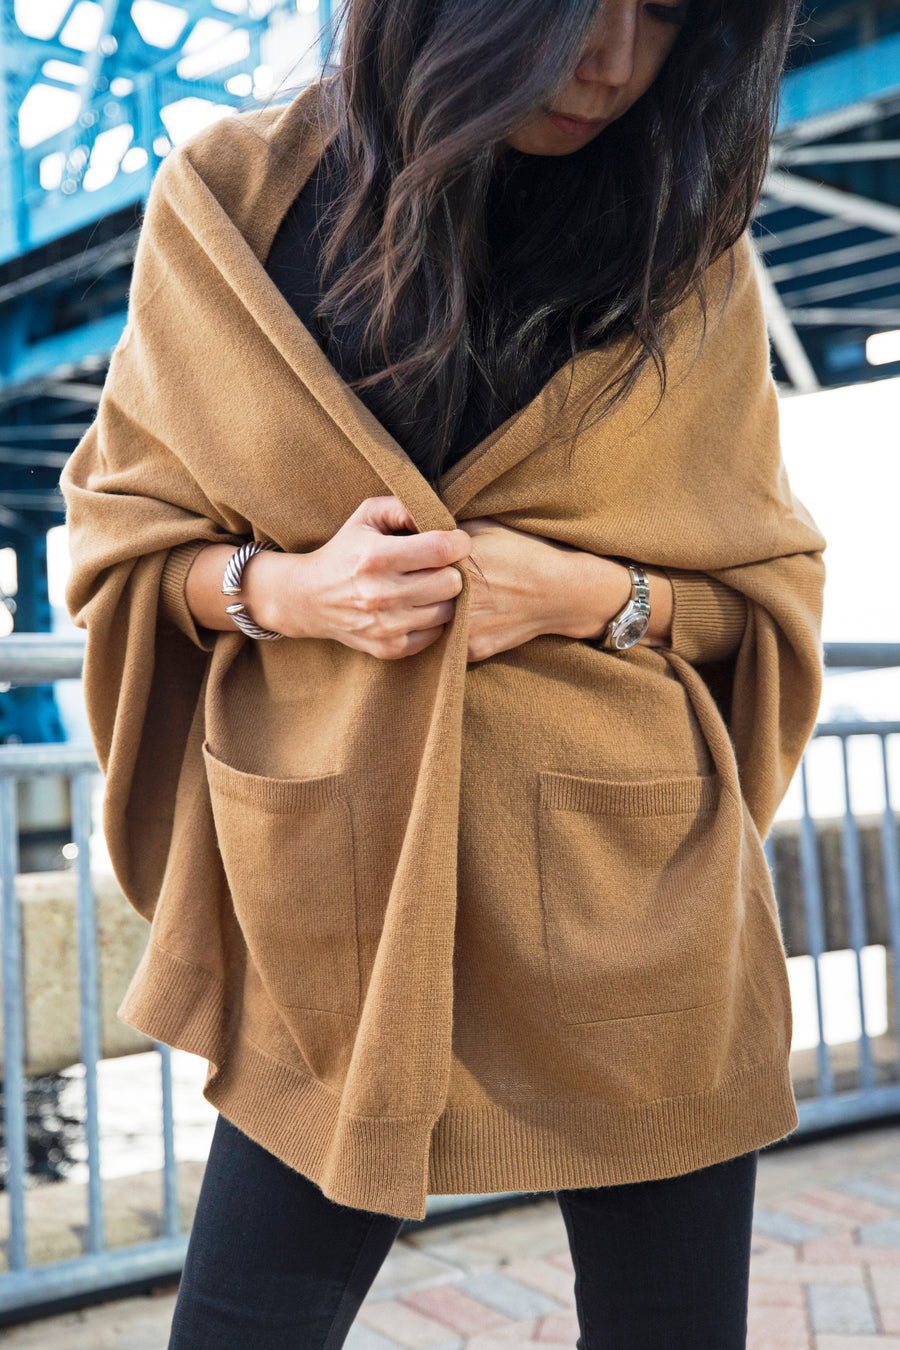 pine cashmere women's audrey multi wear 100% pure cashmere cardigan wrap camel color